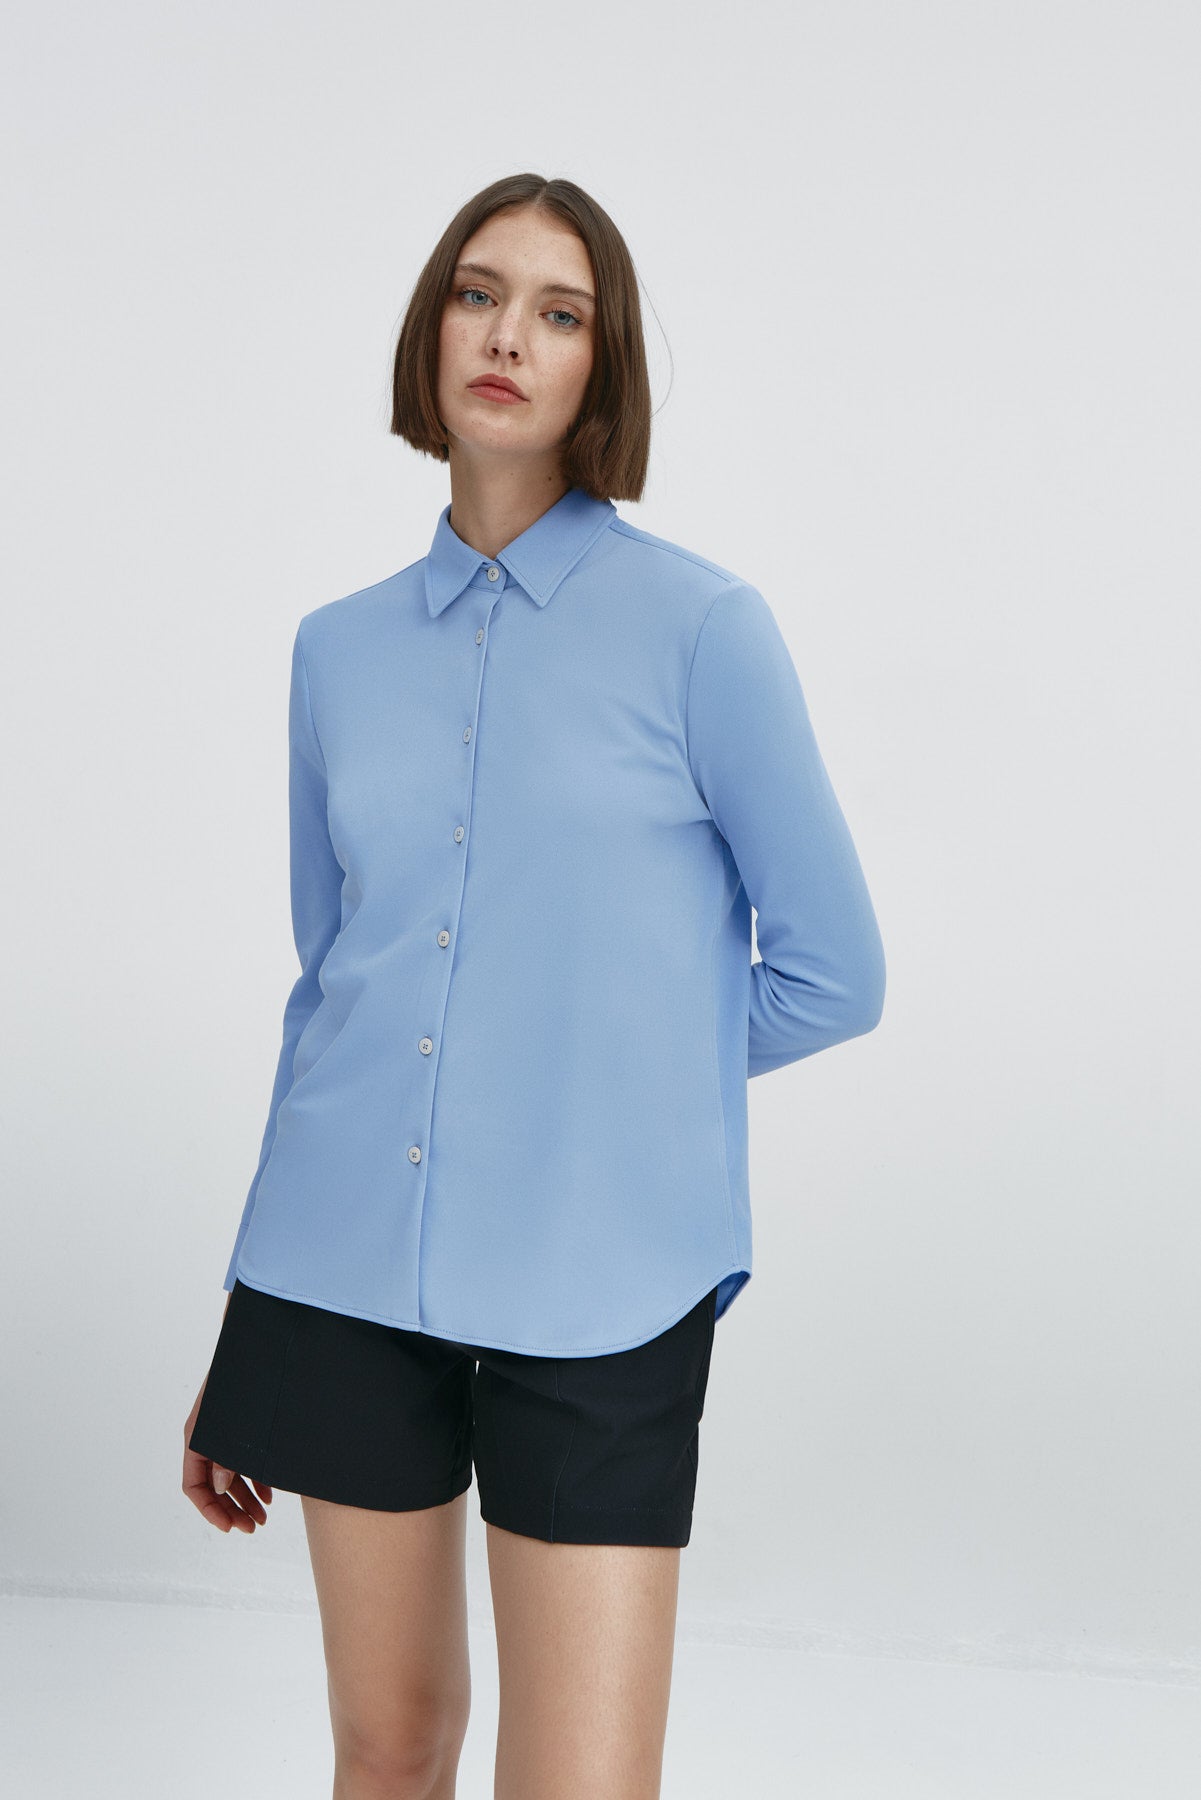 Camisa azul cabo oversized para mujer de manga larga, de la marca Sepiia. Estilo holgado para realzar tu look con elegancia y comodidad. Foto frente